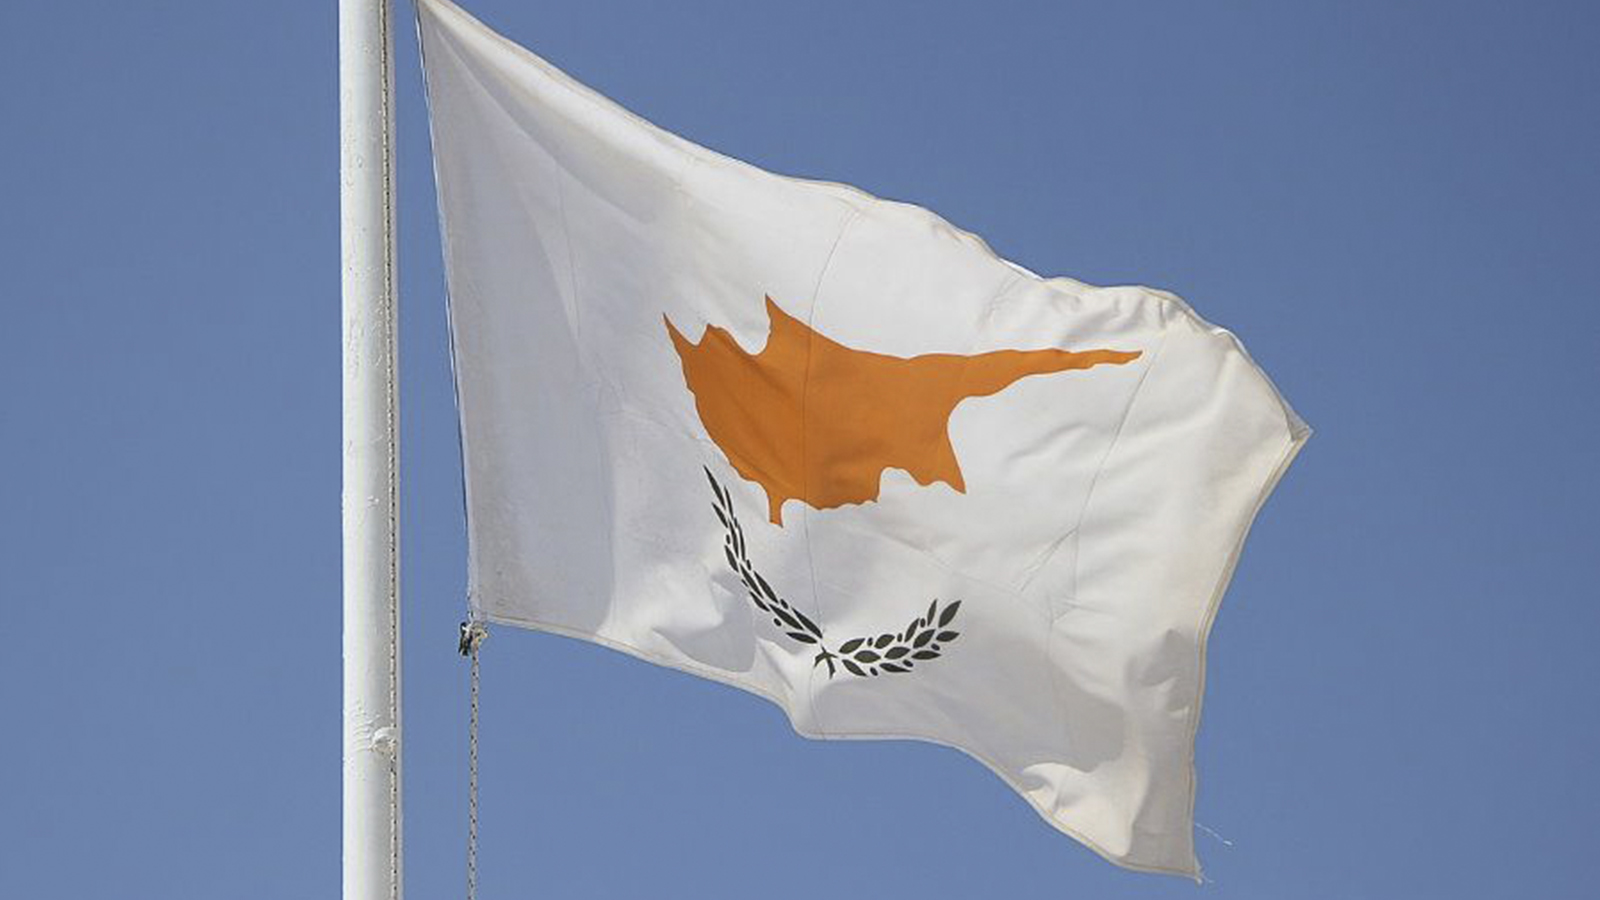 Κύπρος: Αύξηση παραγωγής για τις ασφαλιστικές εταιρείες το α’ εξάμηνο 2022